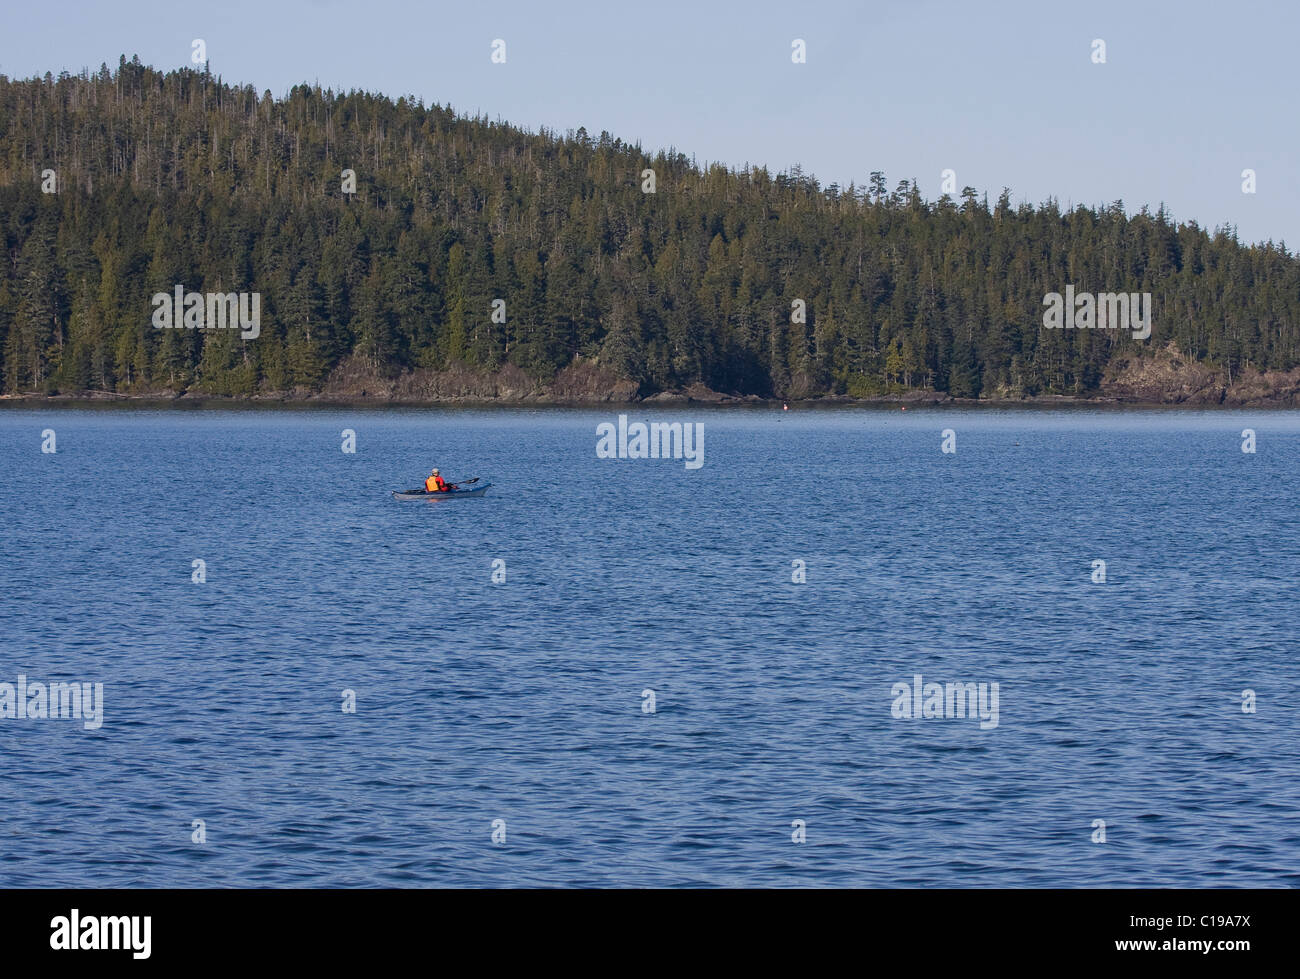 Le kayakiste en mer au large de solitaire stories plage Port Hardy l'île de Vancouver avec la forêt en arrière-plan Banque D'Images